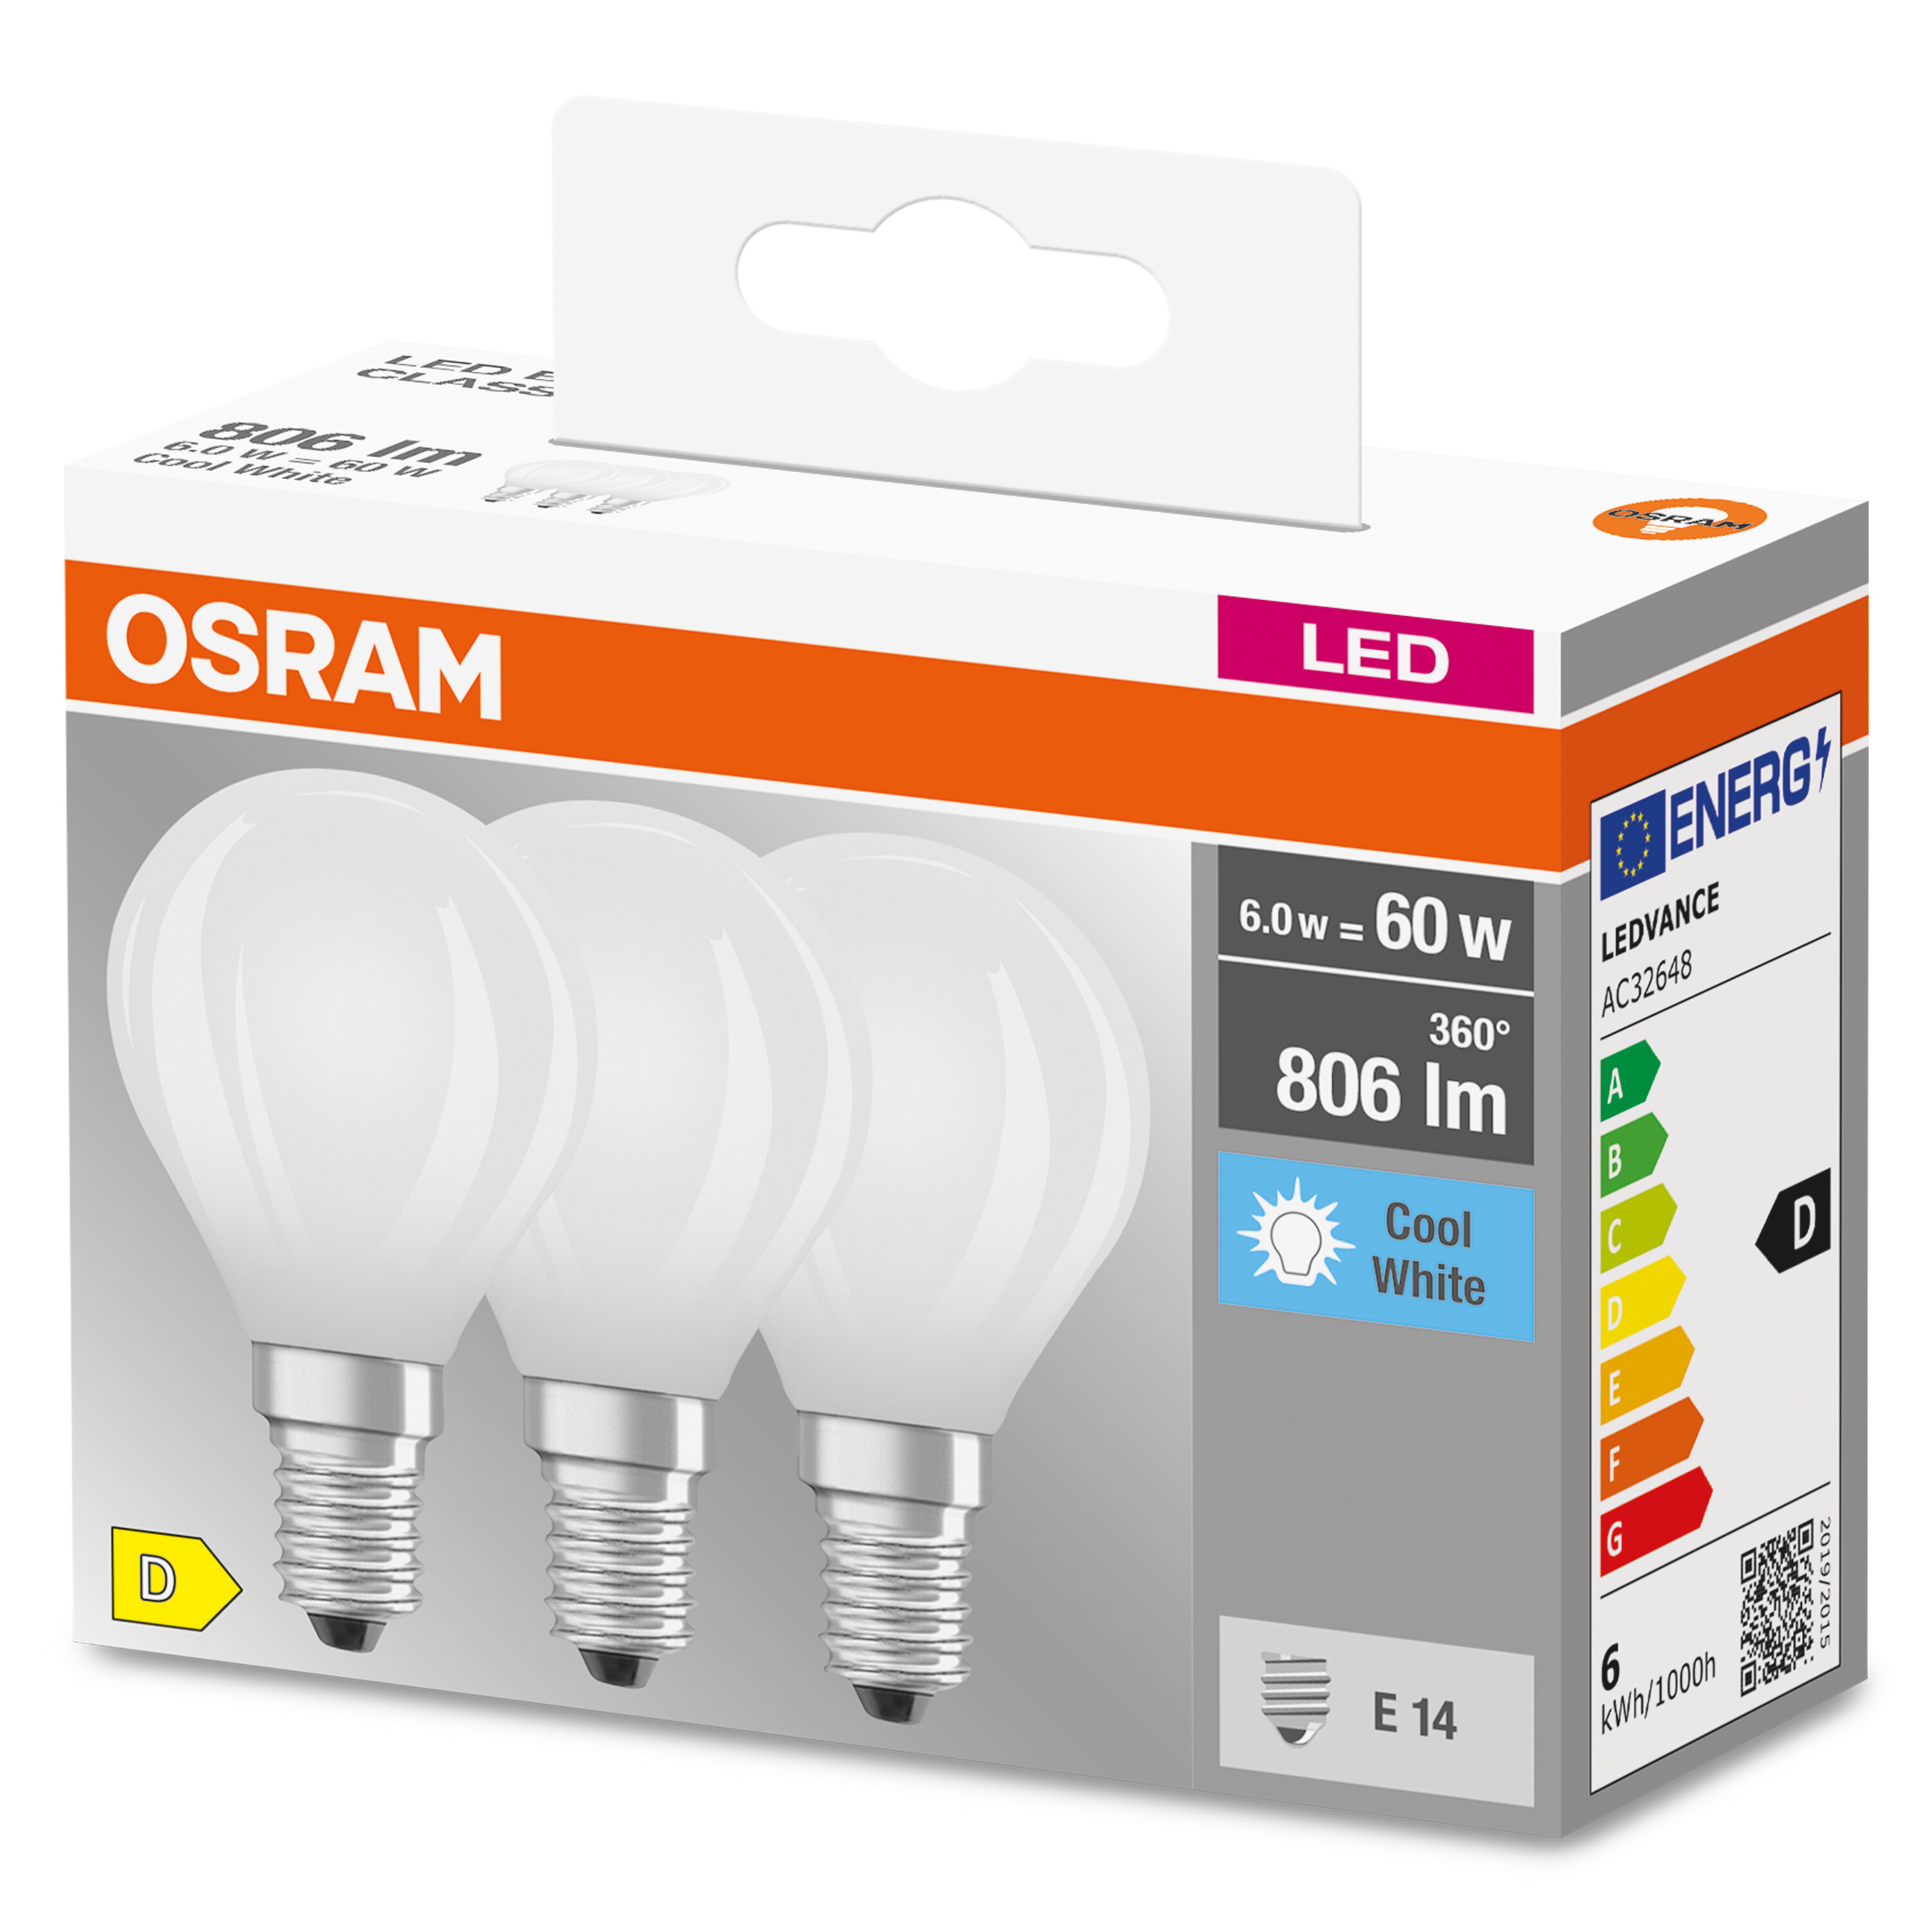 Lampe Kaltweiß LED P CLASSIC LED 806 BASE Lumen OSRAM 